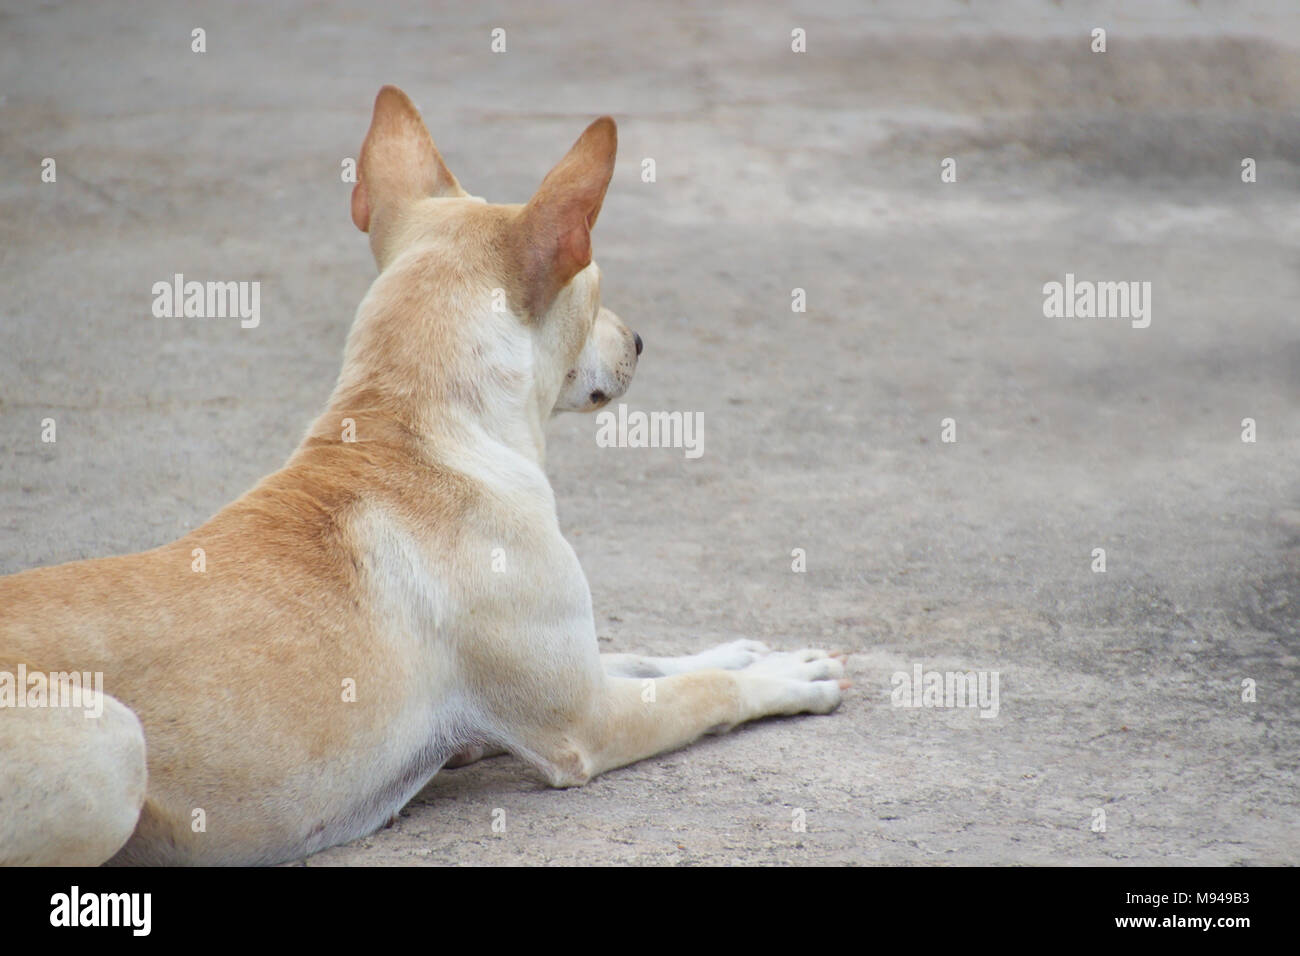 Chiuso solitario in attesa del cane accucciato a terra Foto Stock